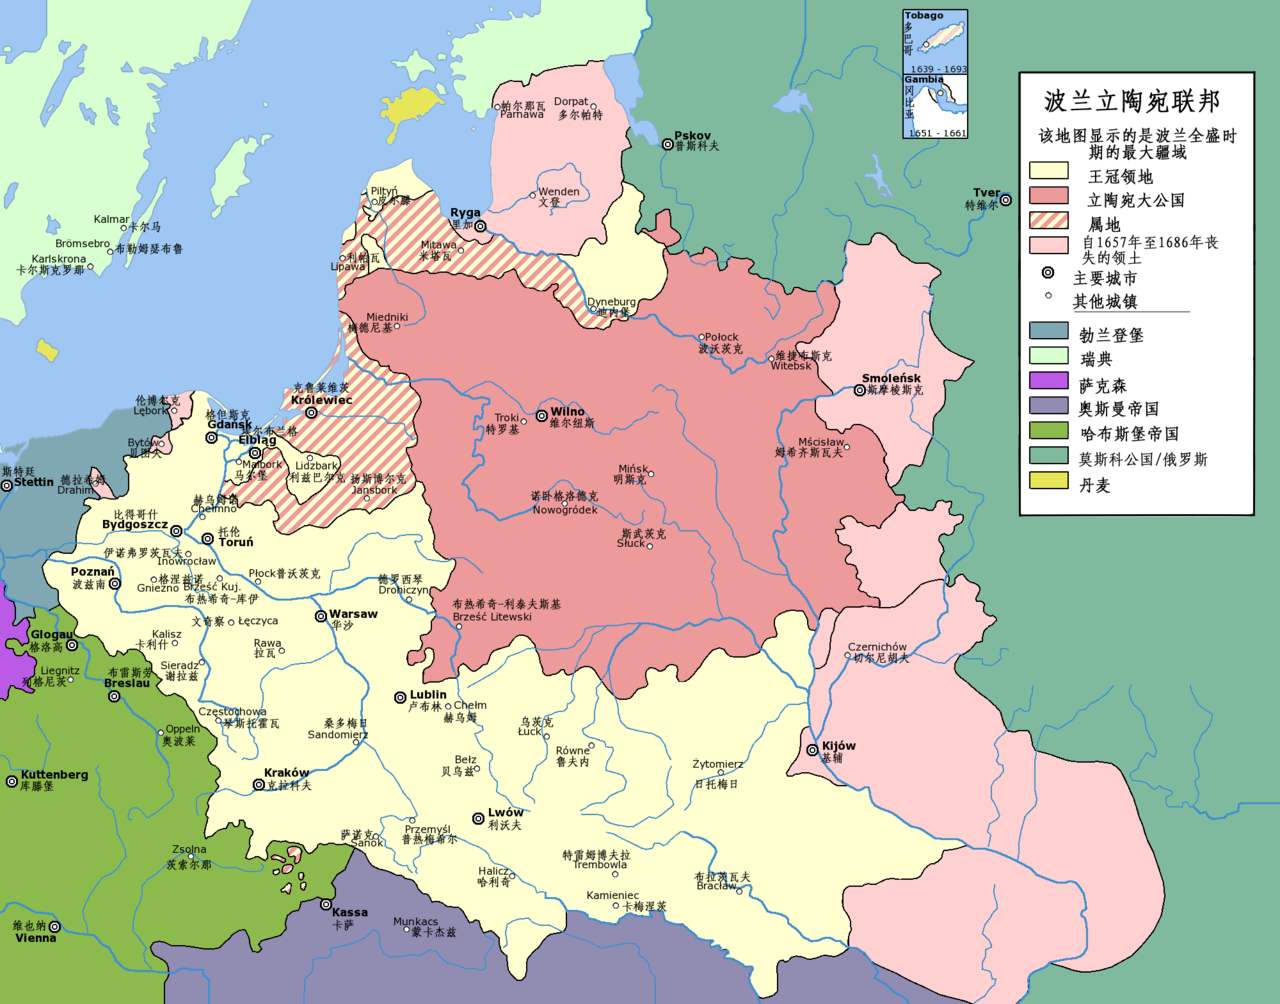 原创处四战之地的波兰历史上四次被邻国瓜分